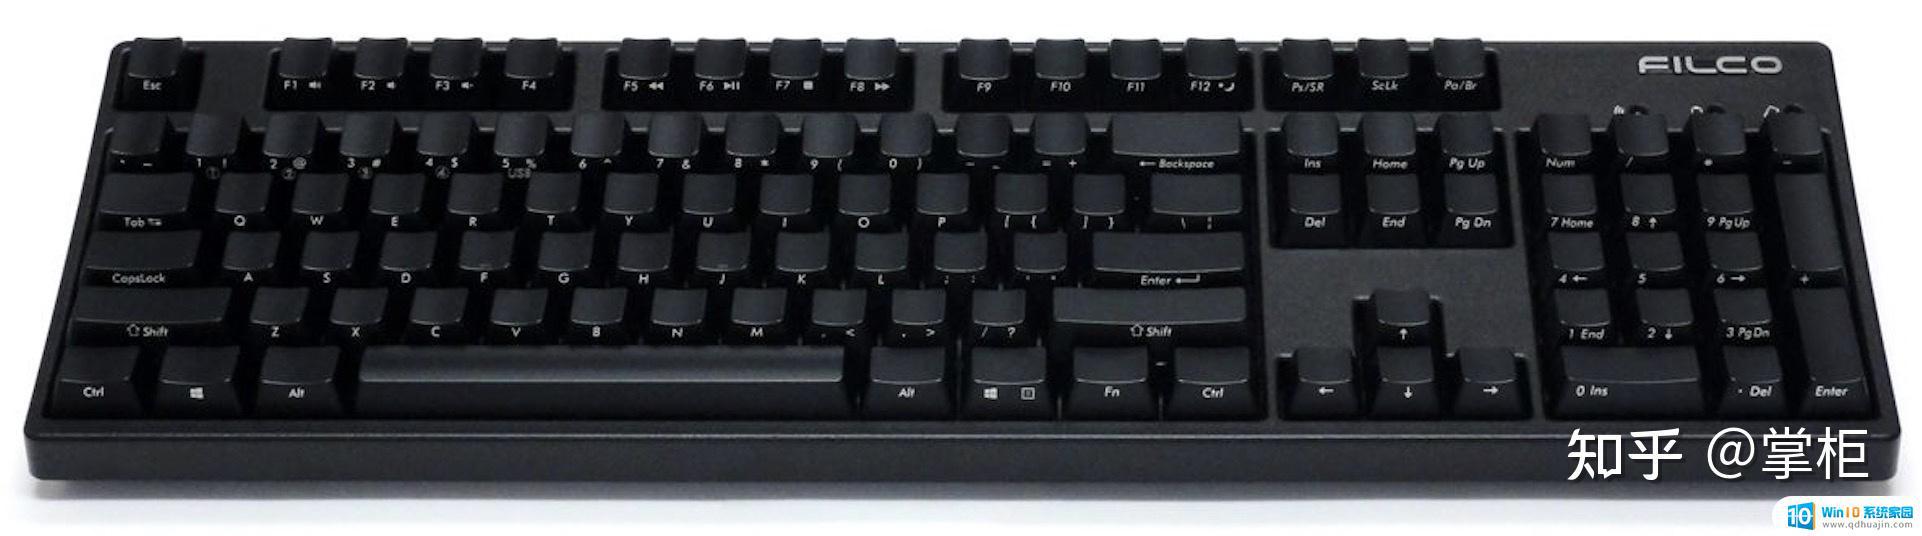 filco键盘有蓝牙吗 Filco机械键盘哪个系列最好用？